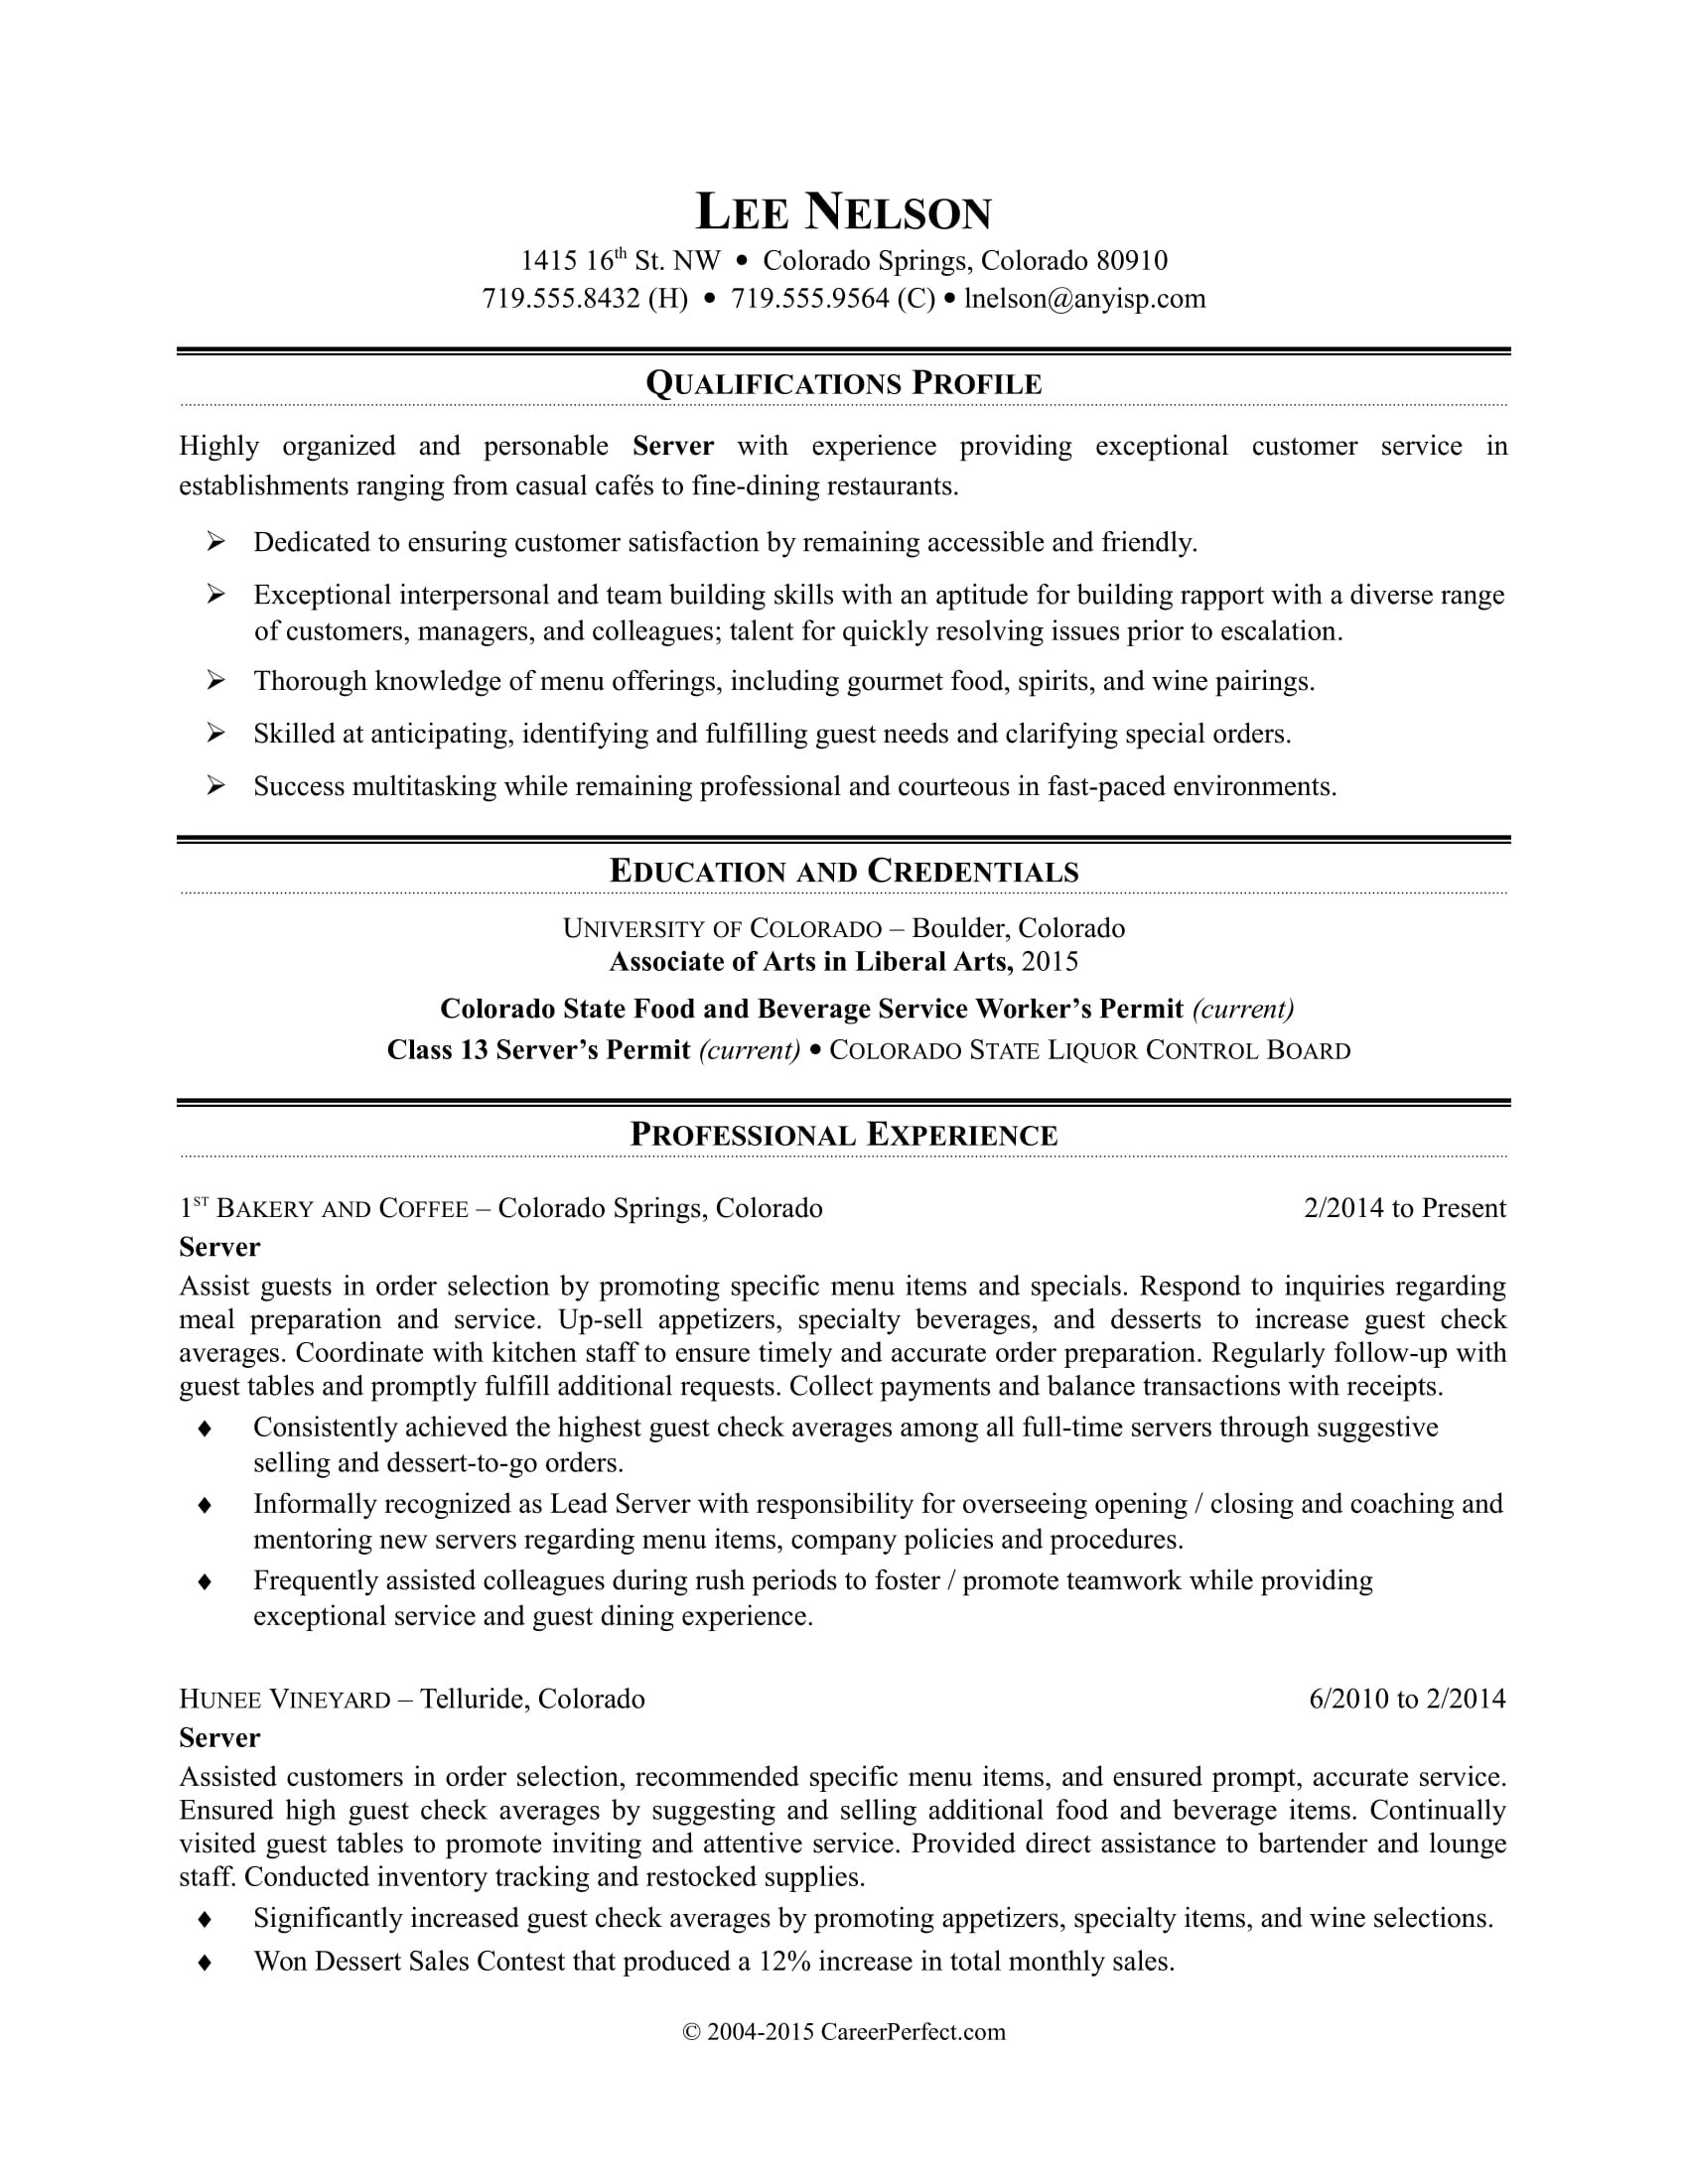 Sample Resume for Part Time Job In Restaurant Restaurant Server Resume Sample Monster.com